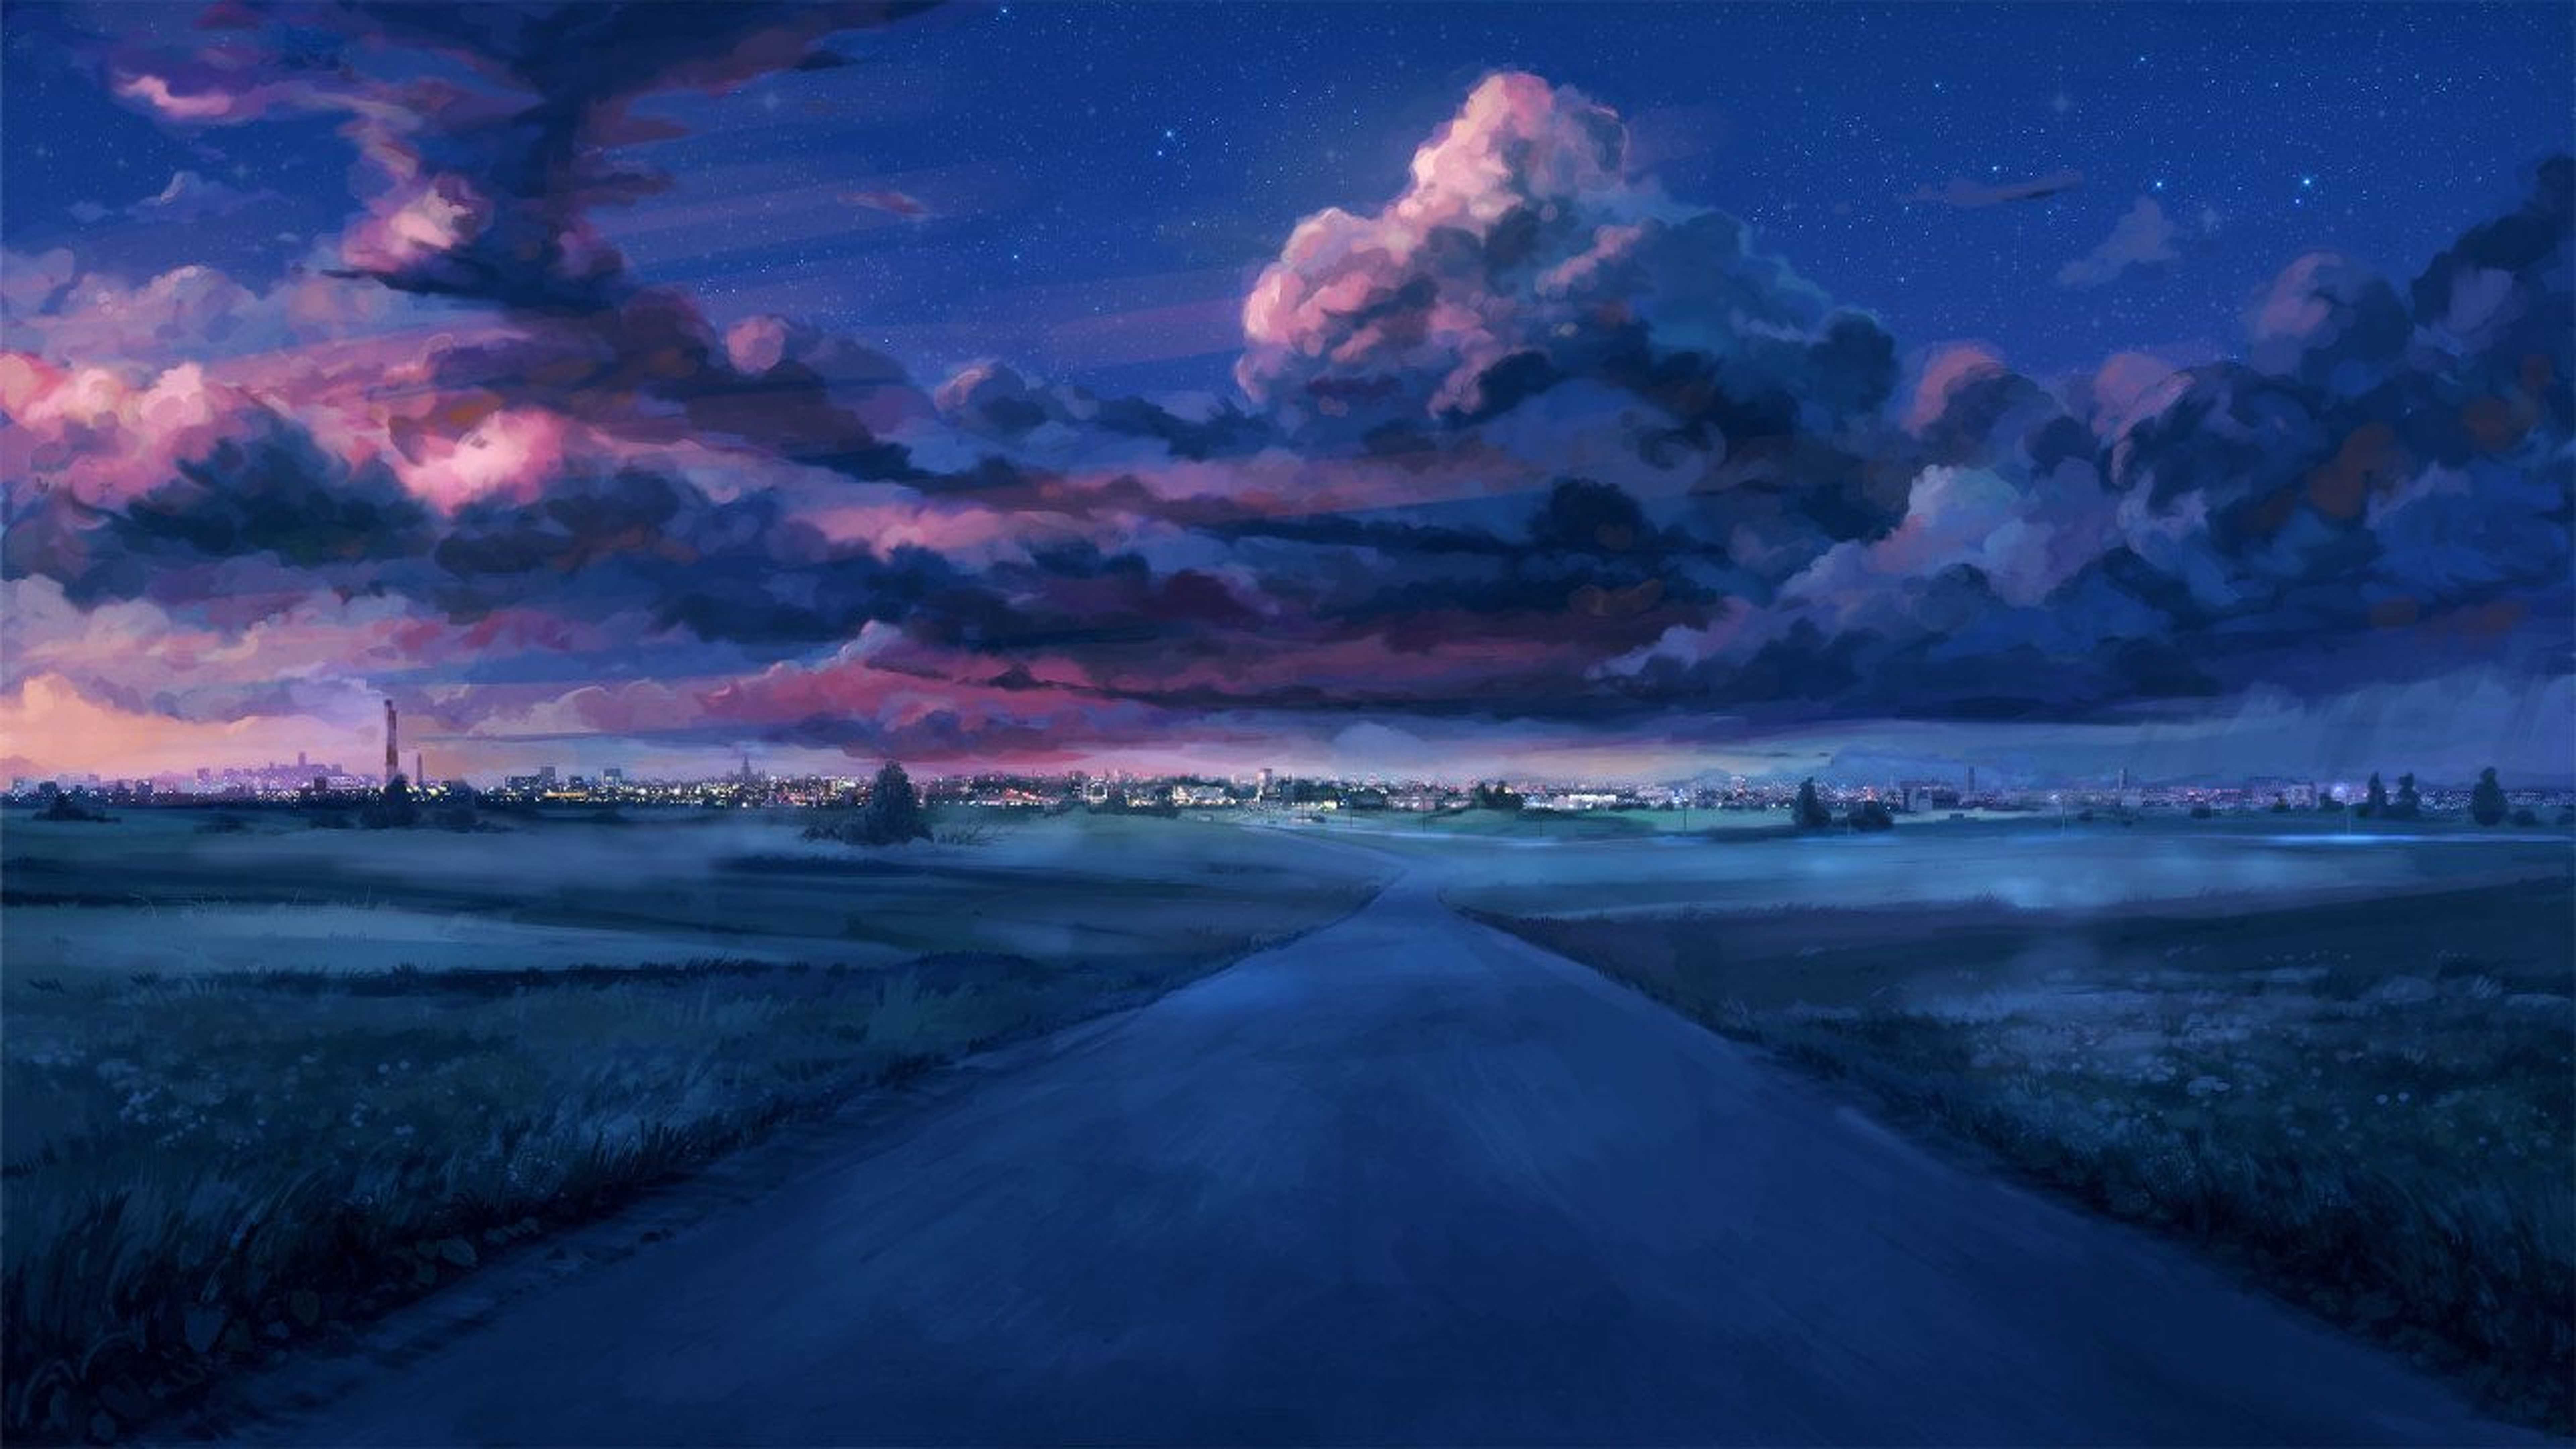 Anime Night Scenery HD Wallpaper (7680x4320)